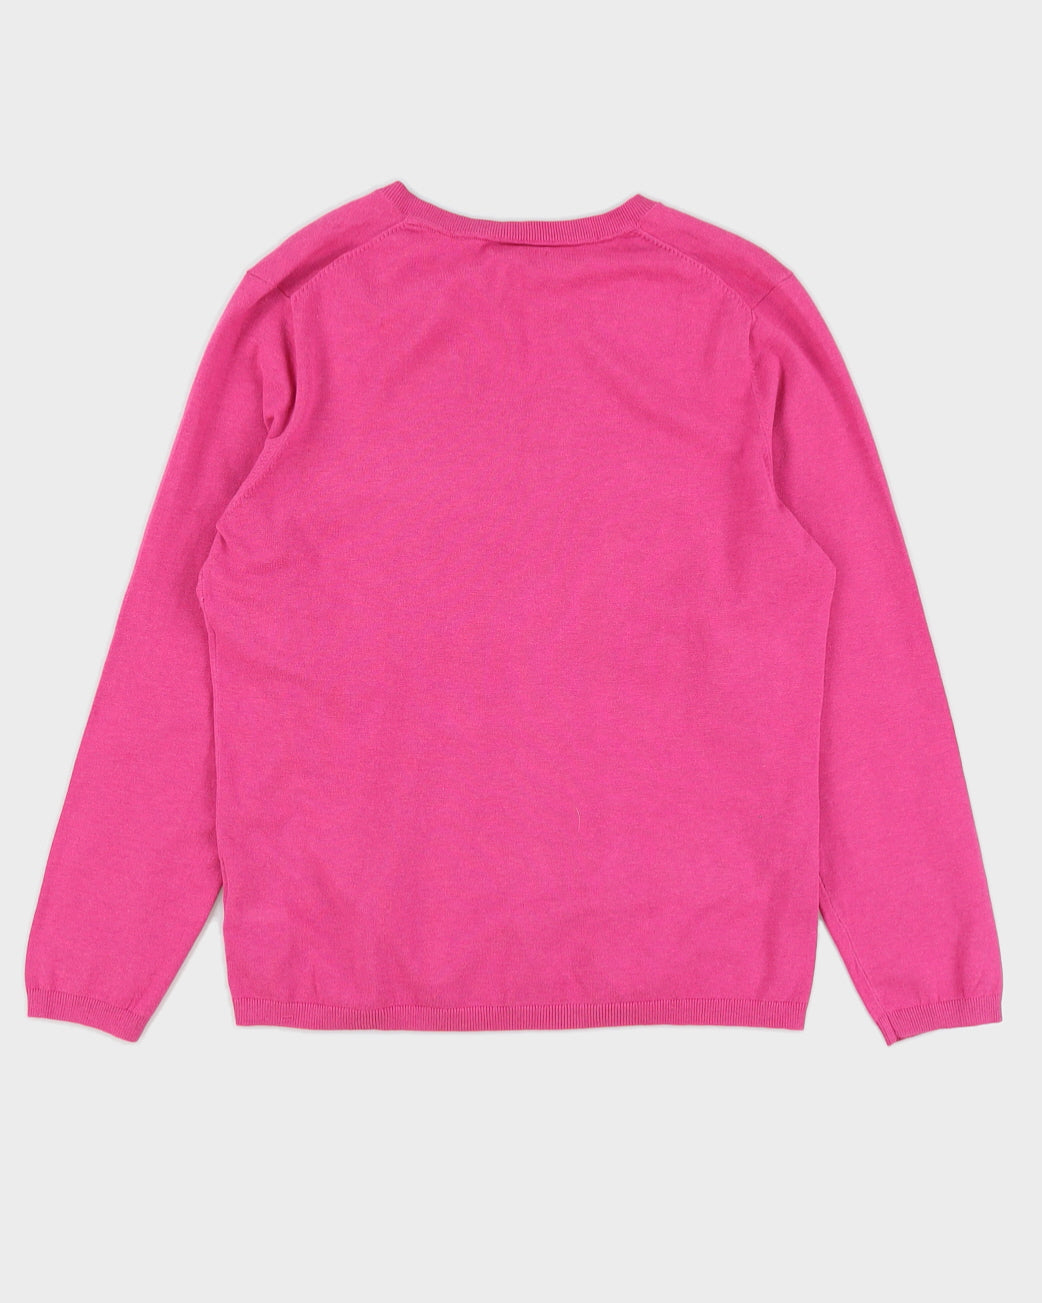 Tommy Hilfiger Women's Pink Sweatshirt - XL